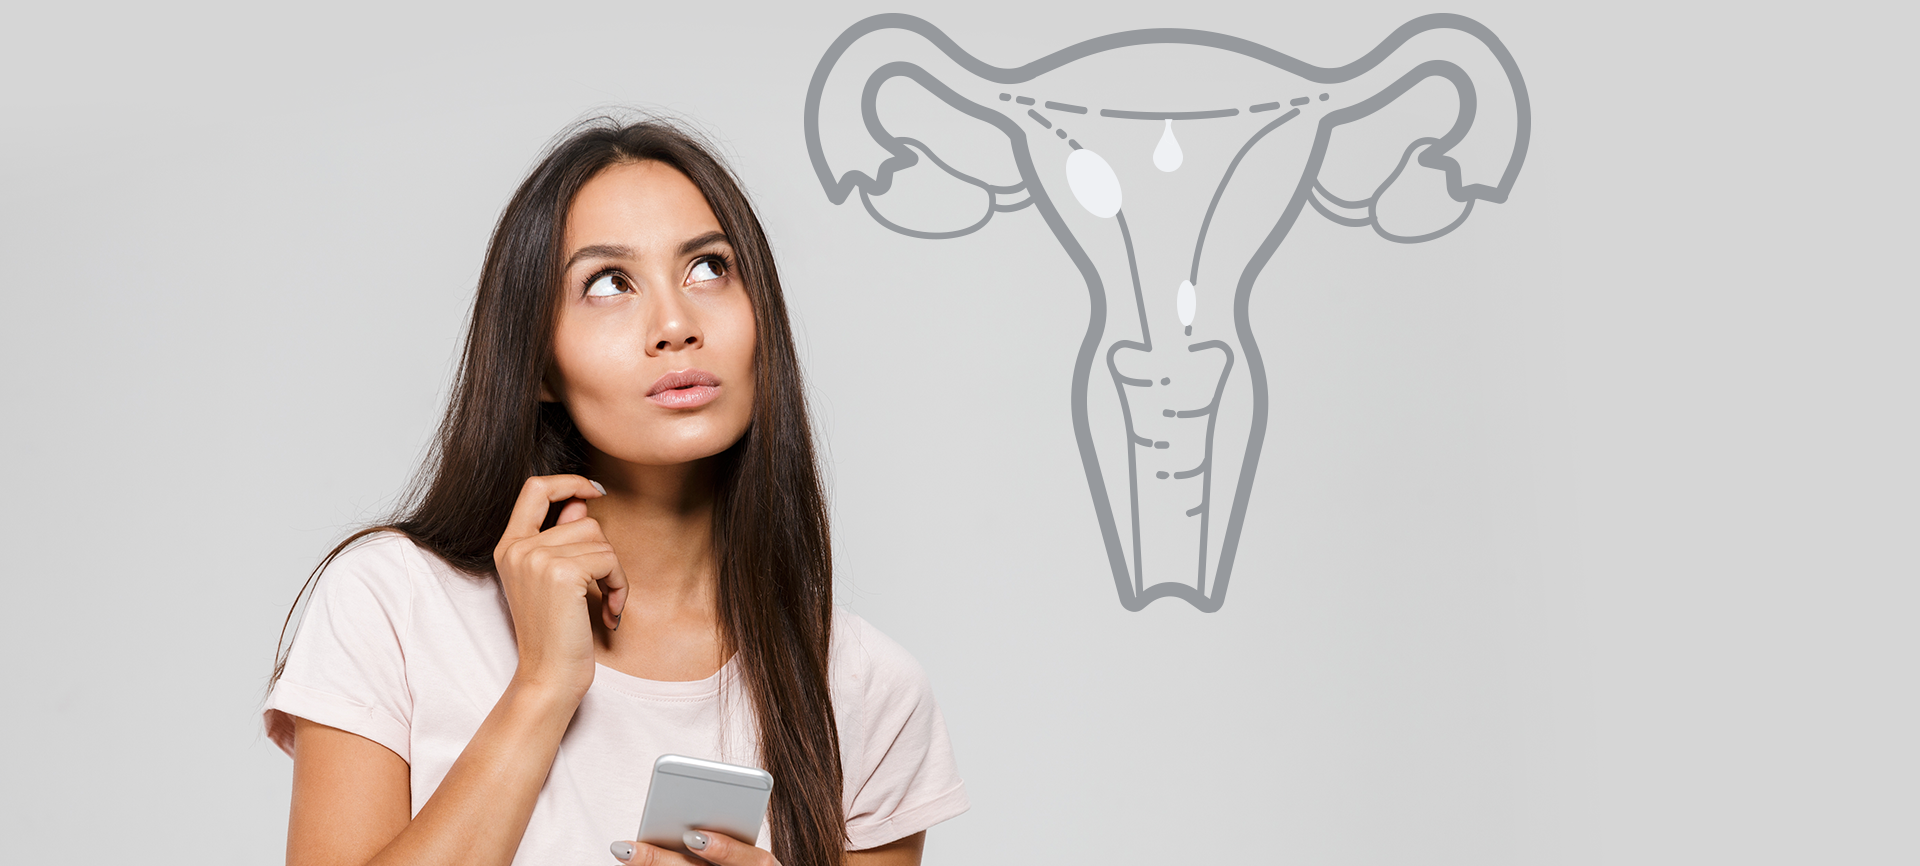 Pólipos endometriais: você sabe o que são e seus riscos?